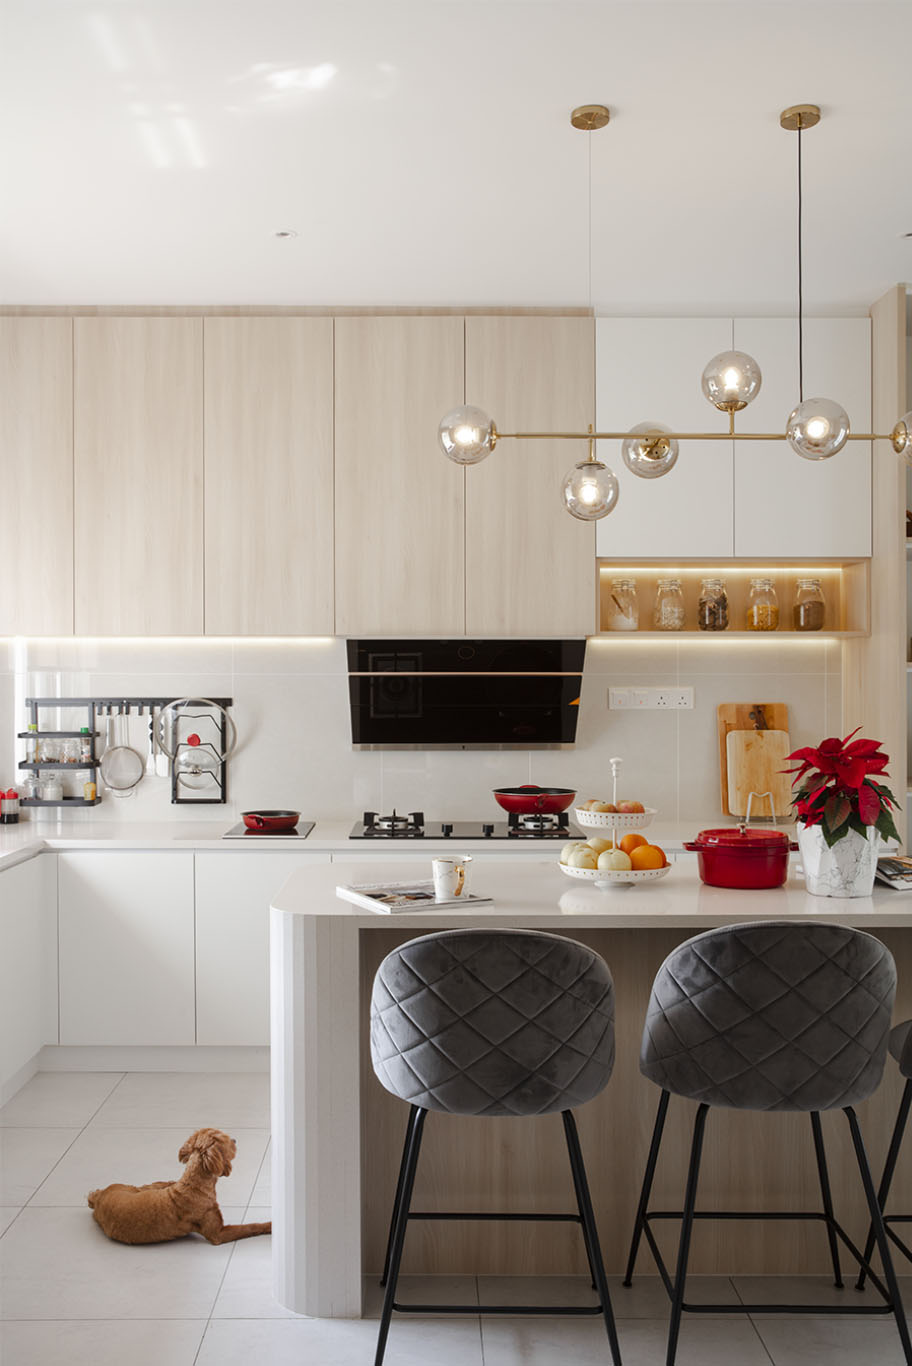 Grande Rhapsody white and soft beige kitchen Mieux interior design